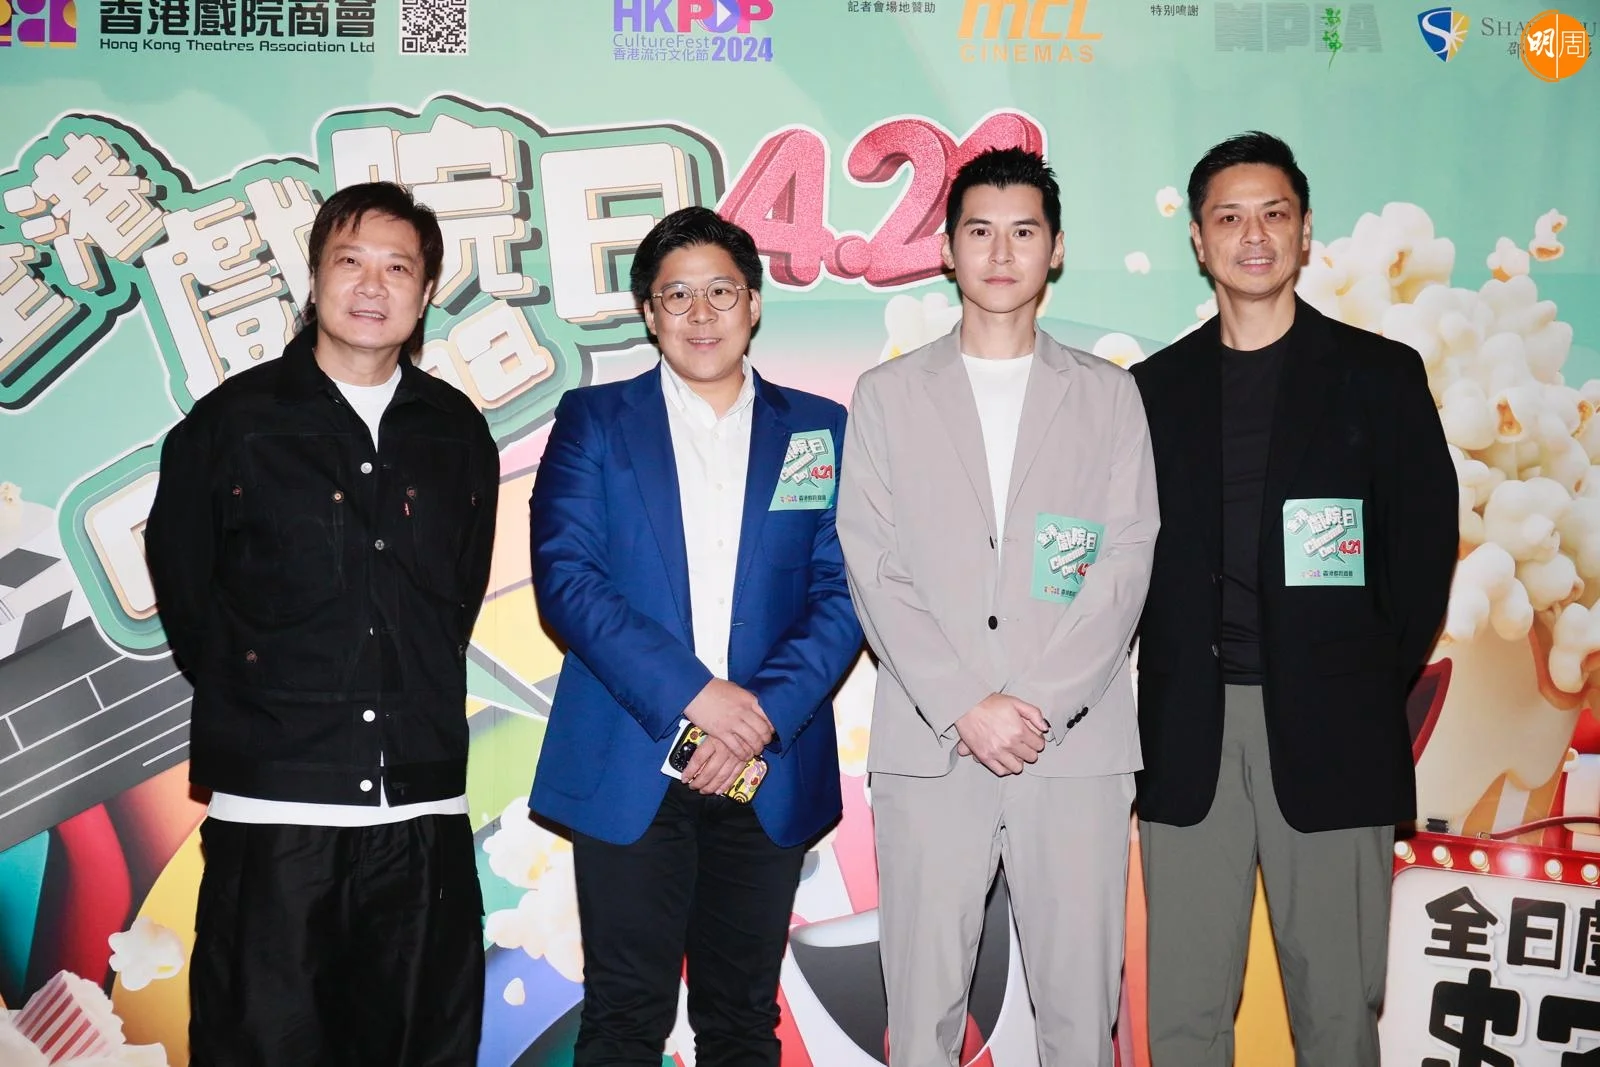 陳家樂、錢嘉樂、霍啟剛、香港戲院商會理事長袁彥文出席發布會，公布4月21日為全港戲院日。